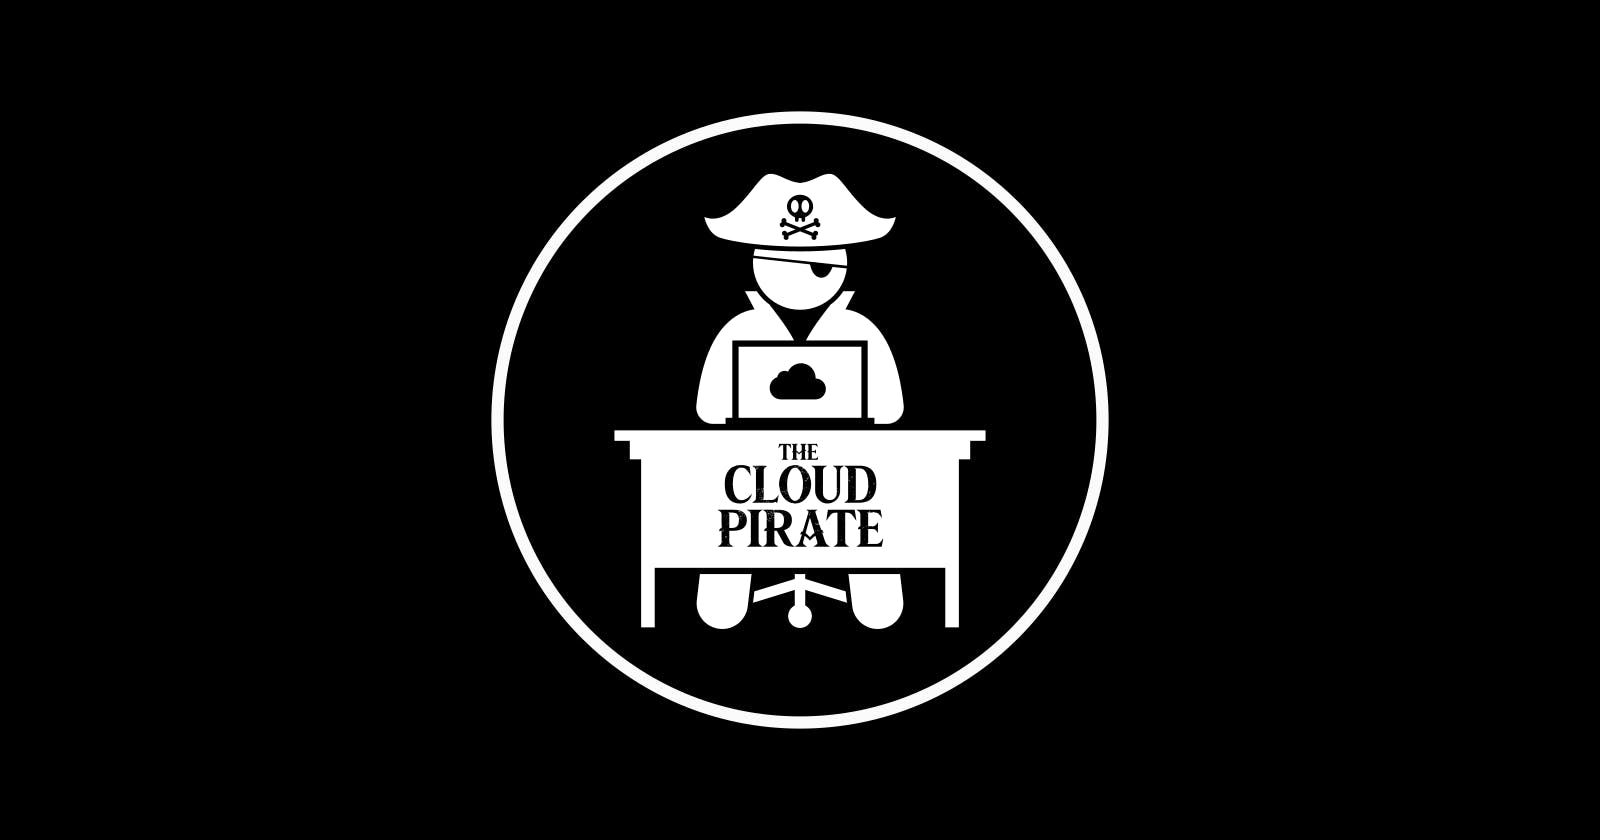 The Cloud Pirate